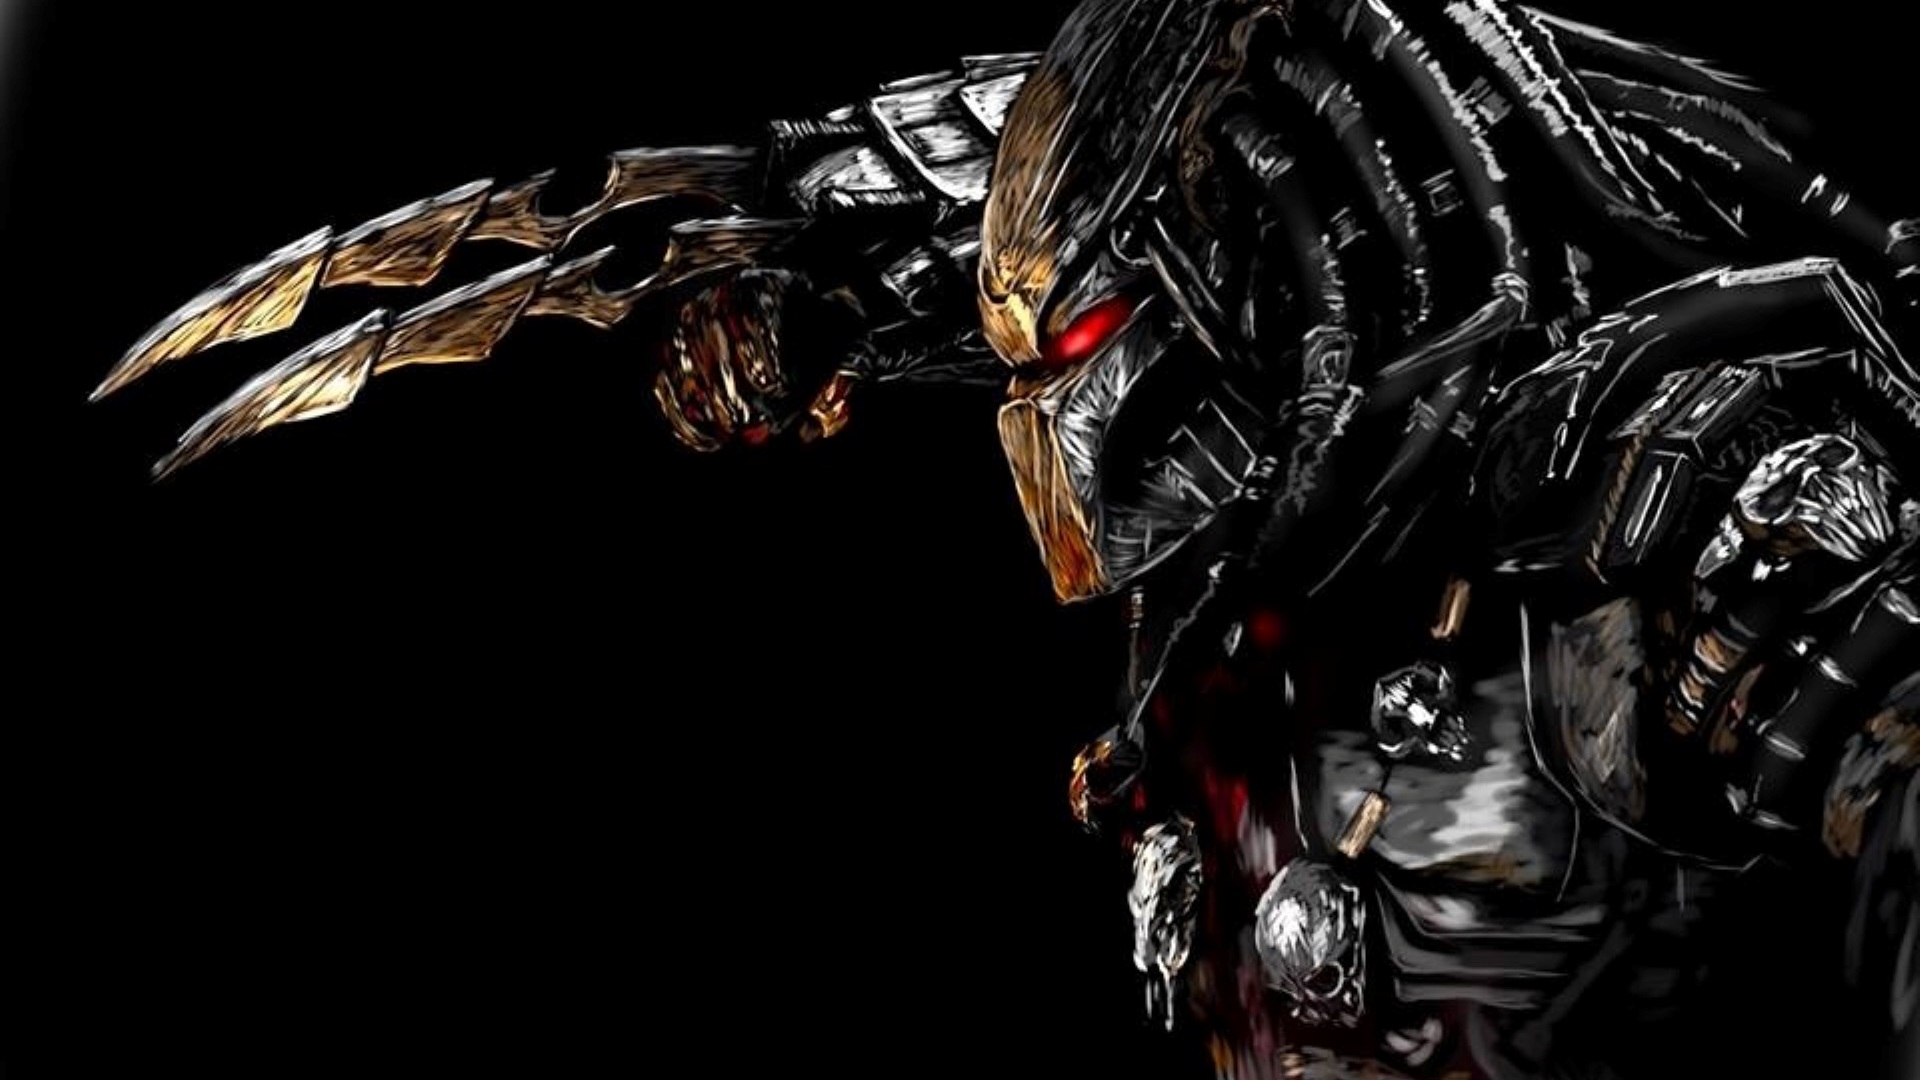 download alien predator 3